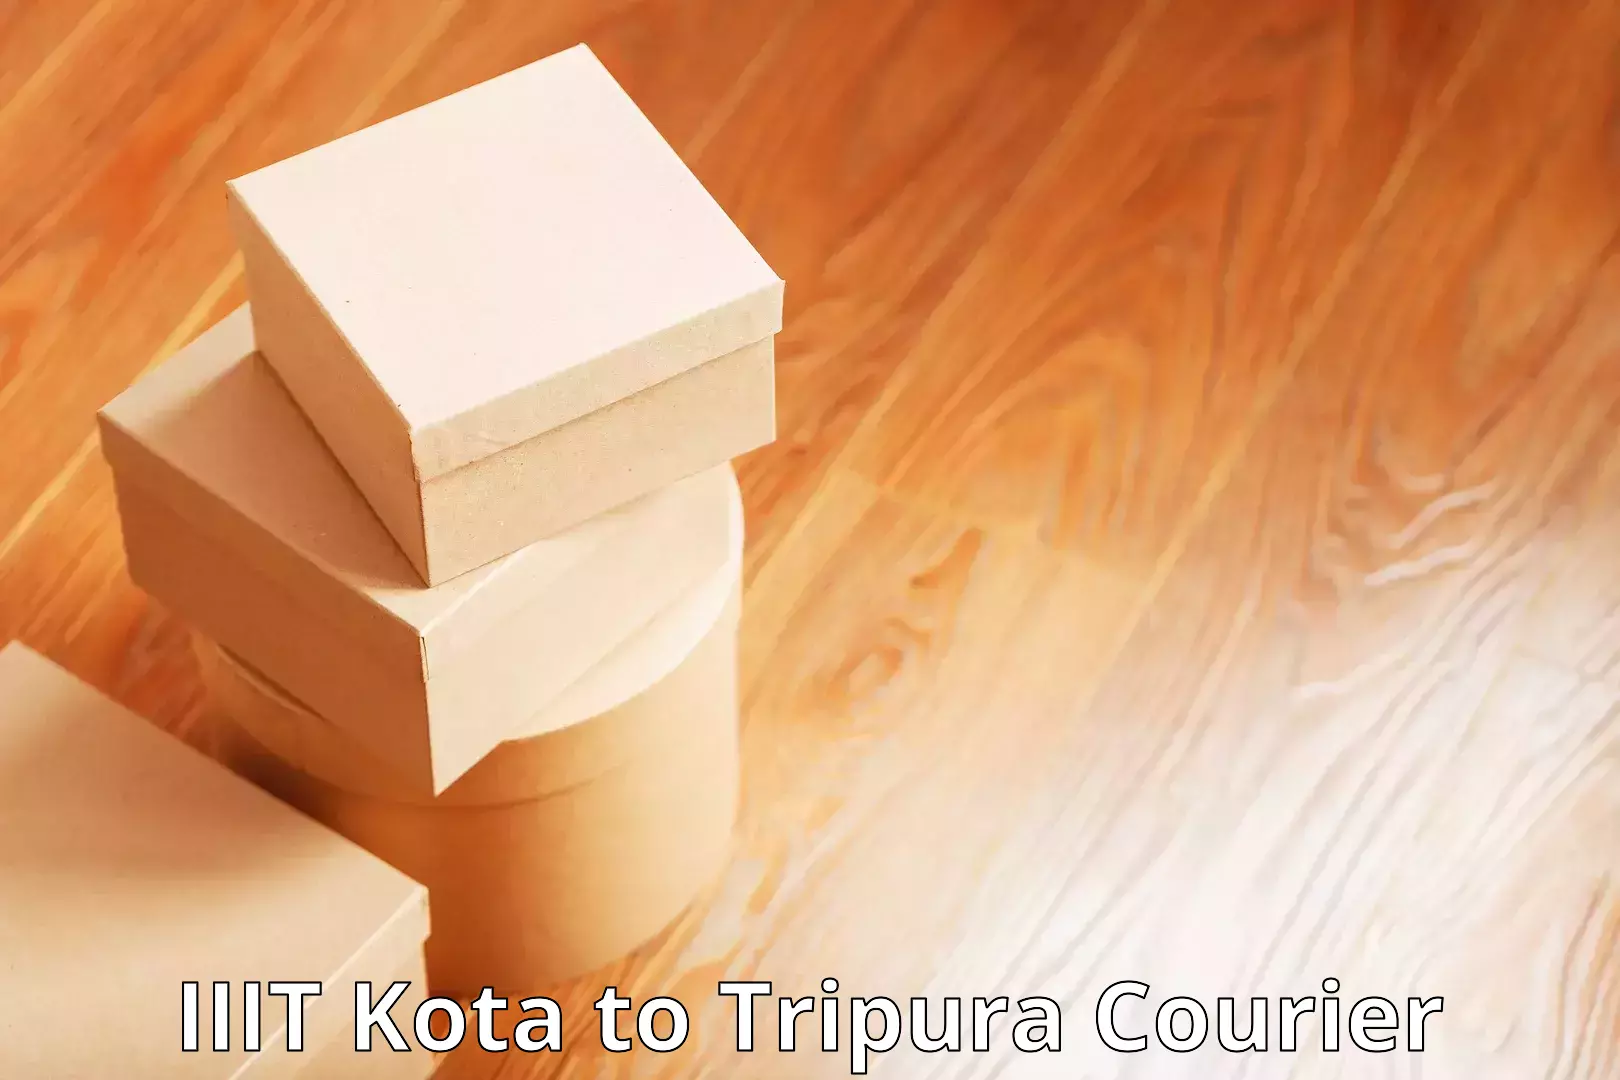 Flexible courier rates IIIT Kota to NIT Agartala